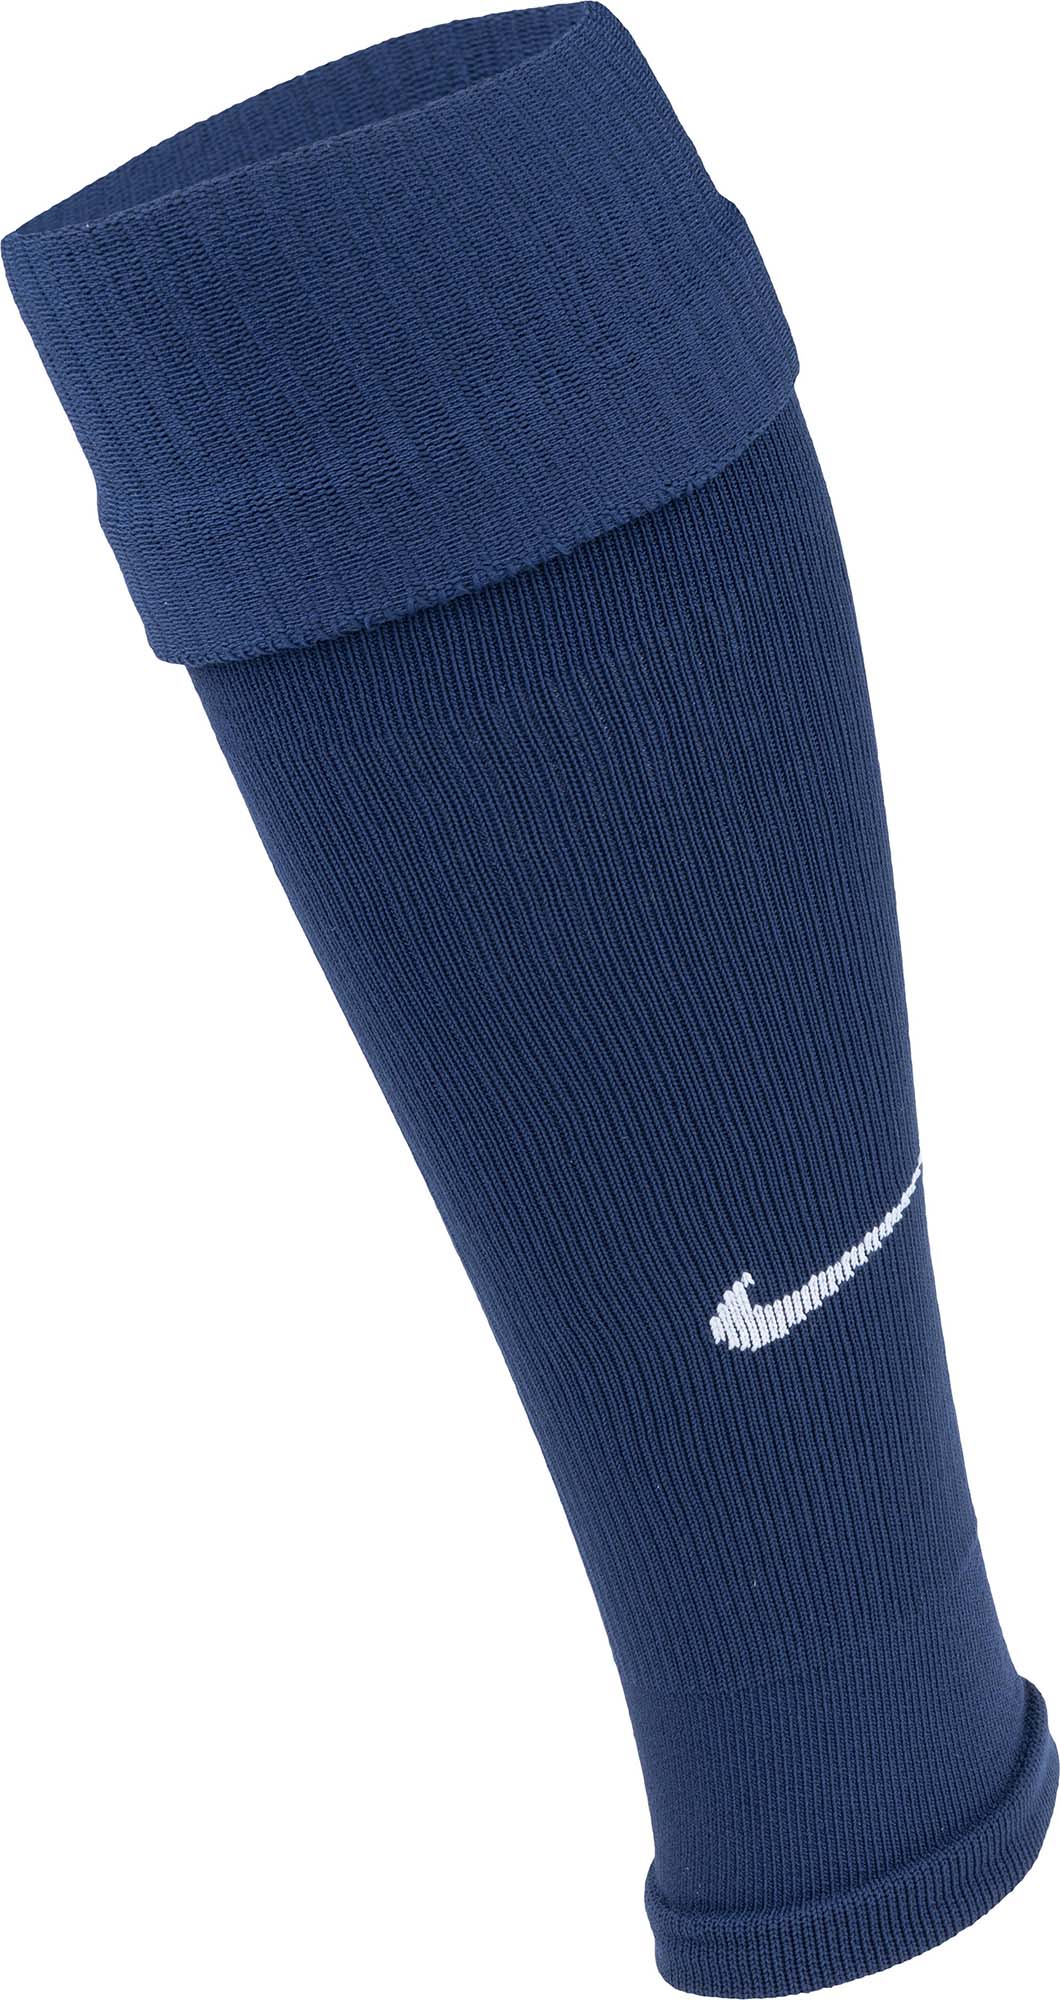 Nike Squad Leg Sleeves